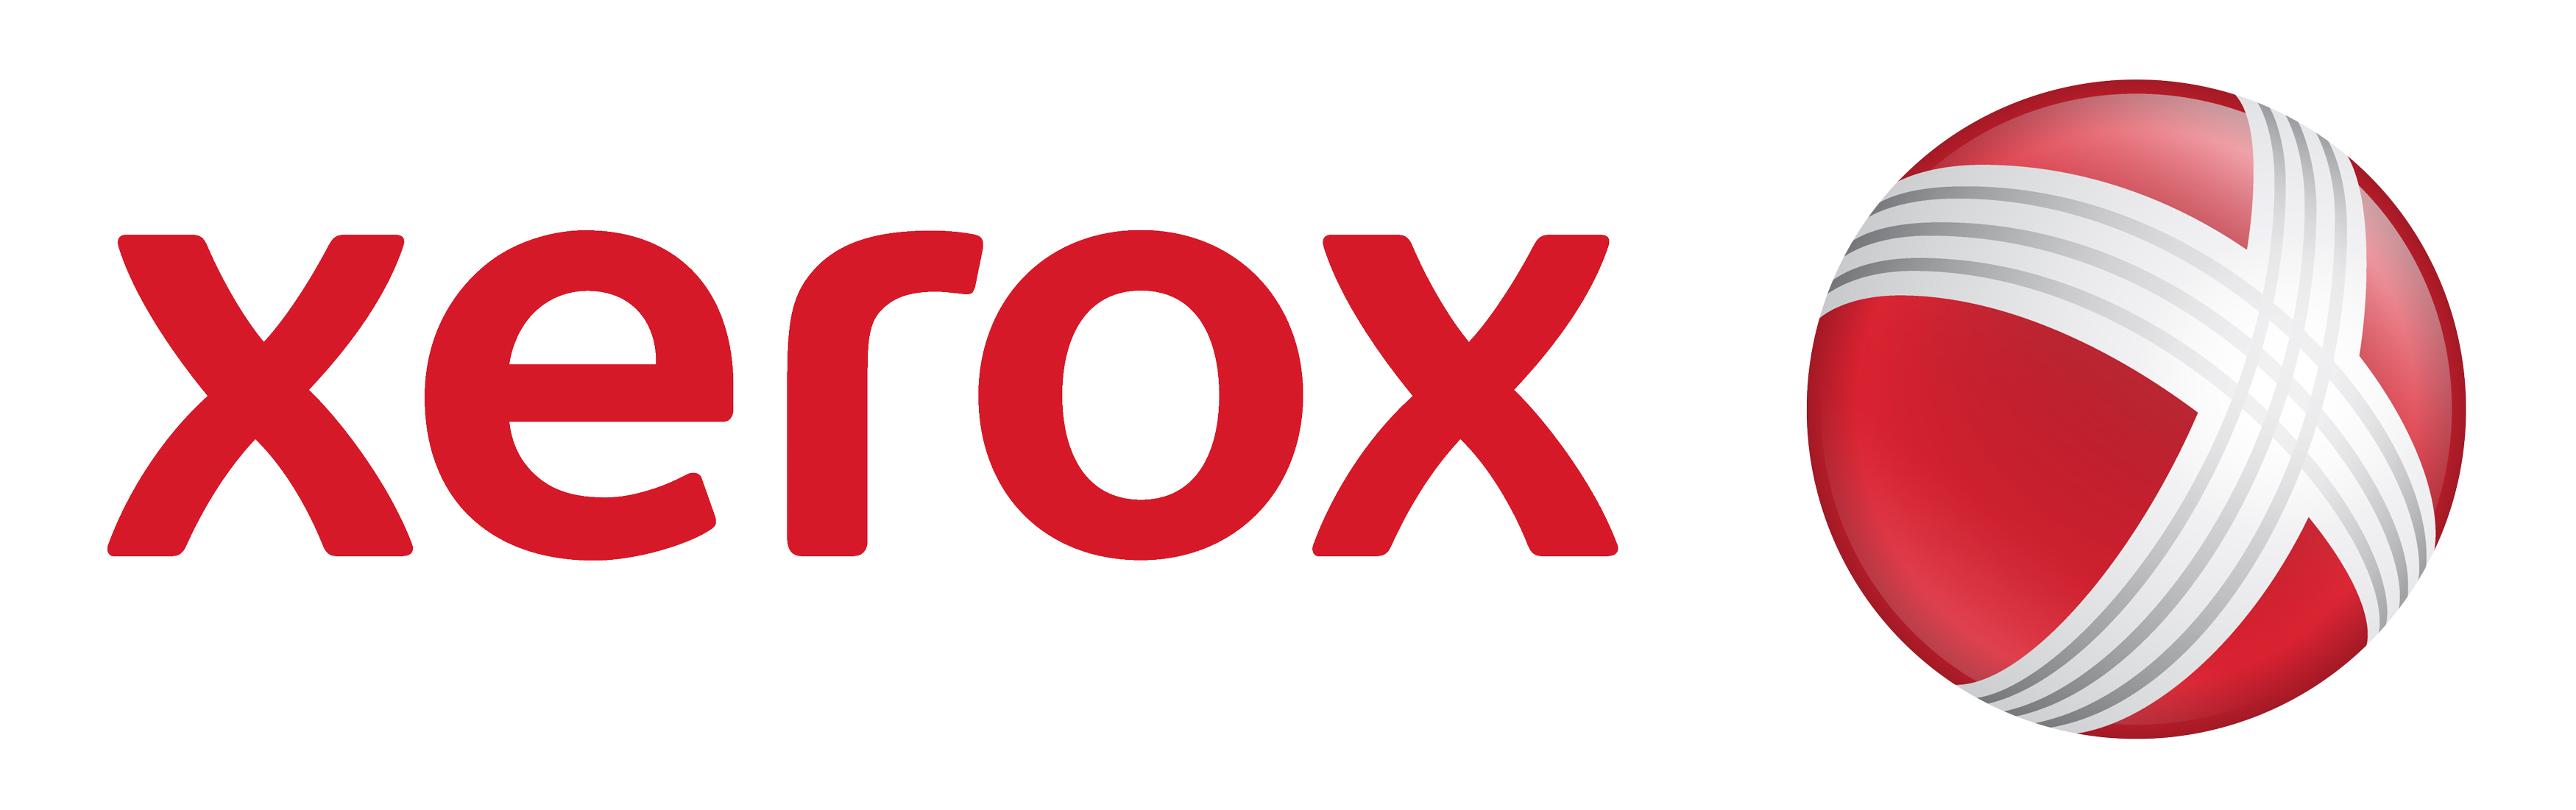 xerox-logo-png--3500